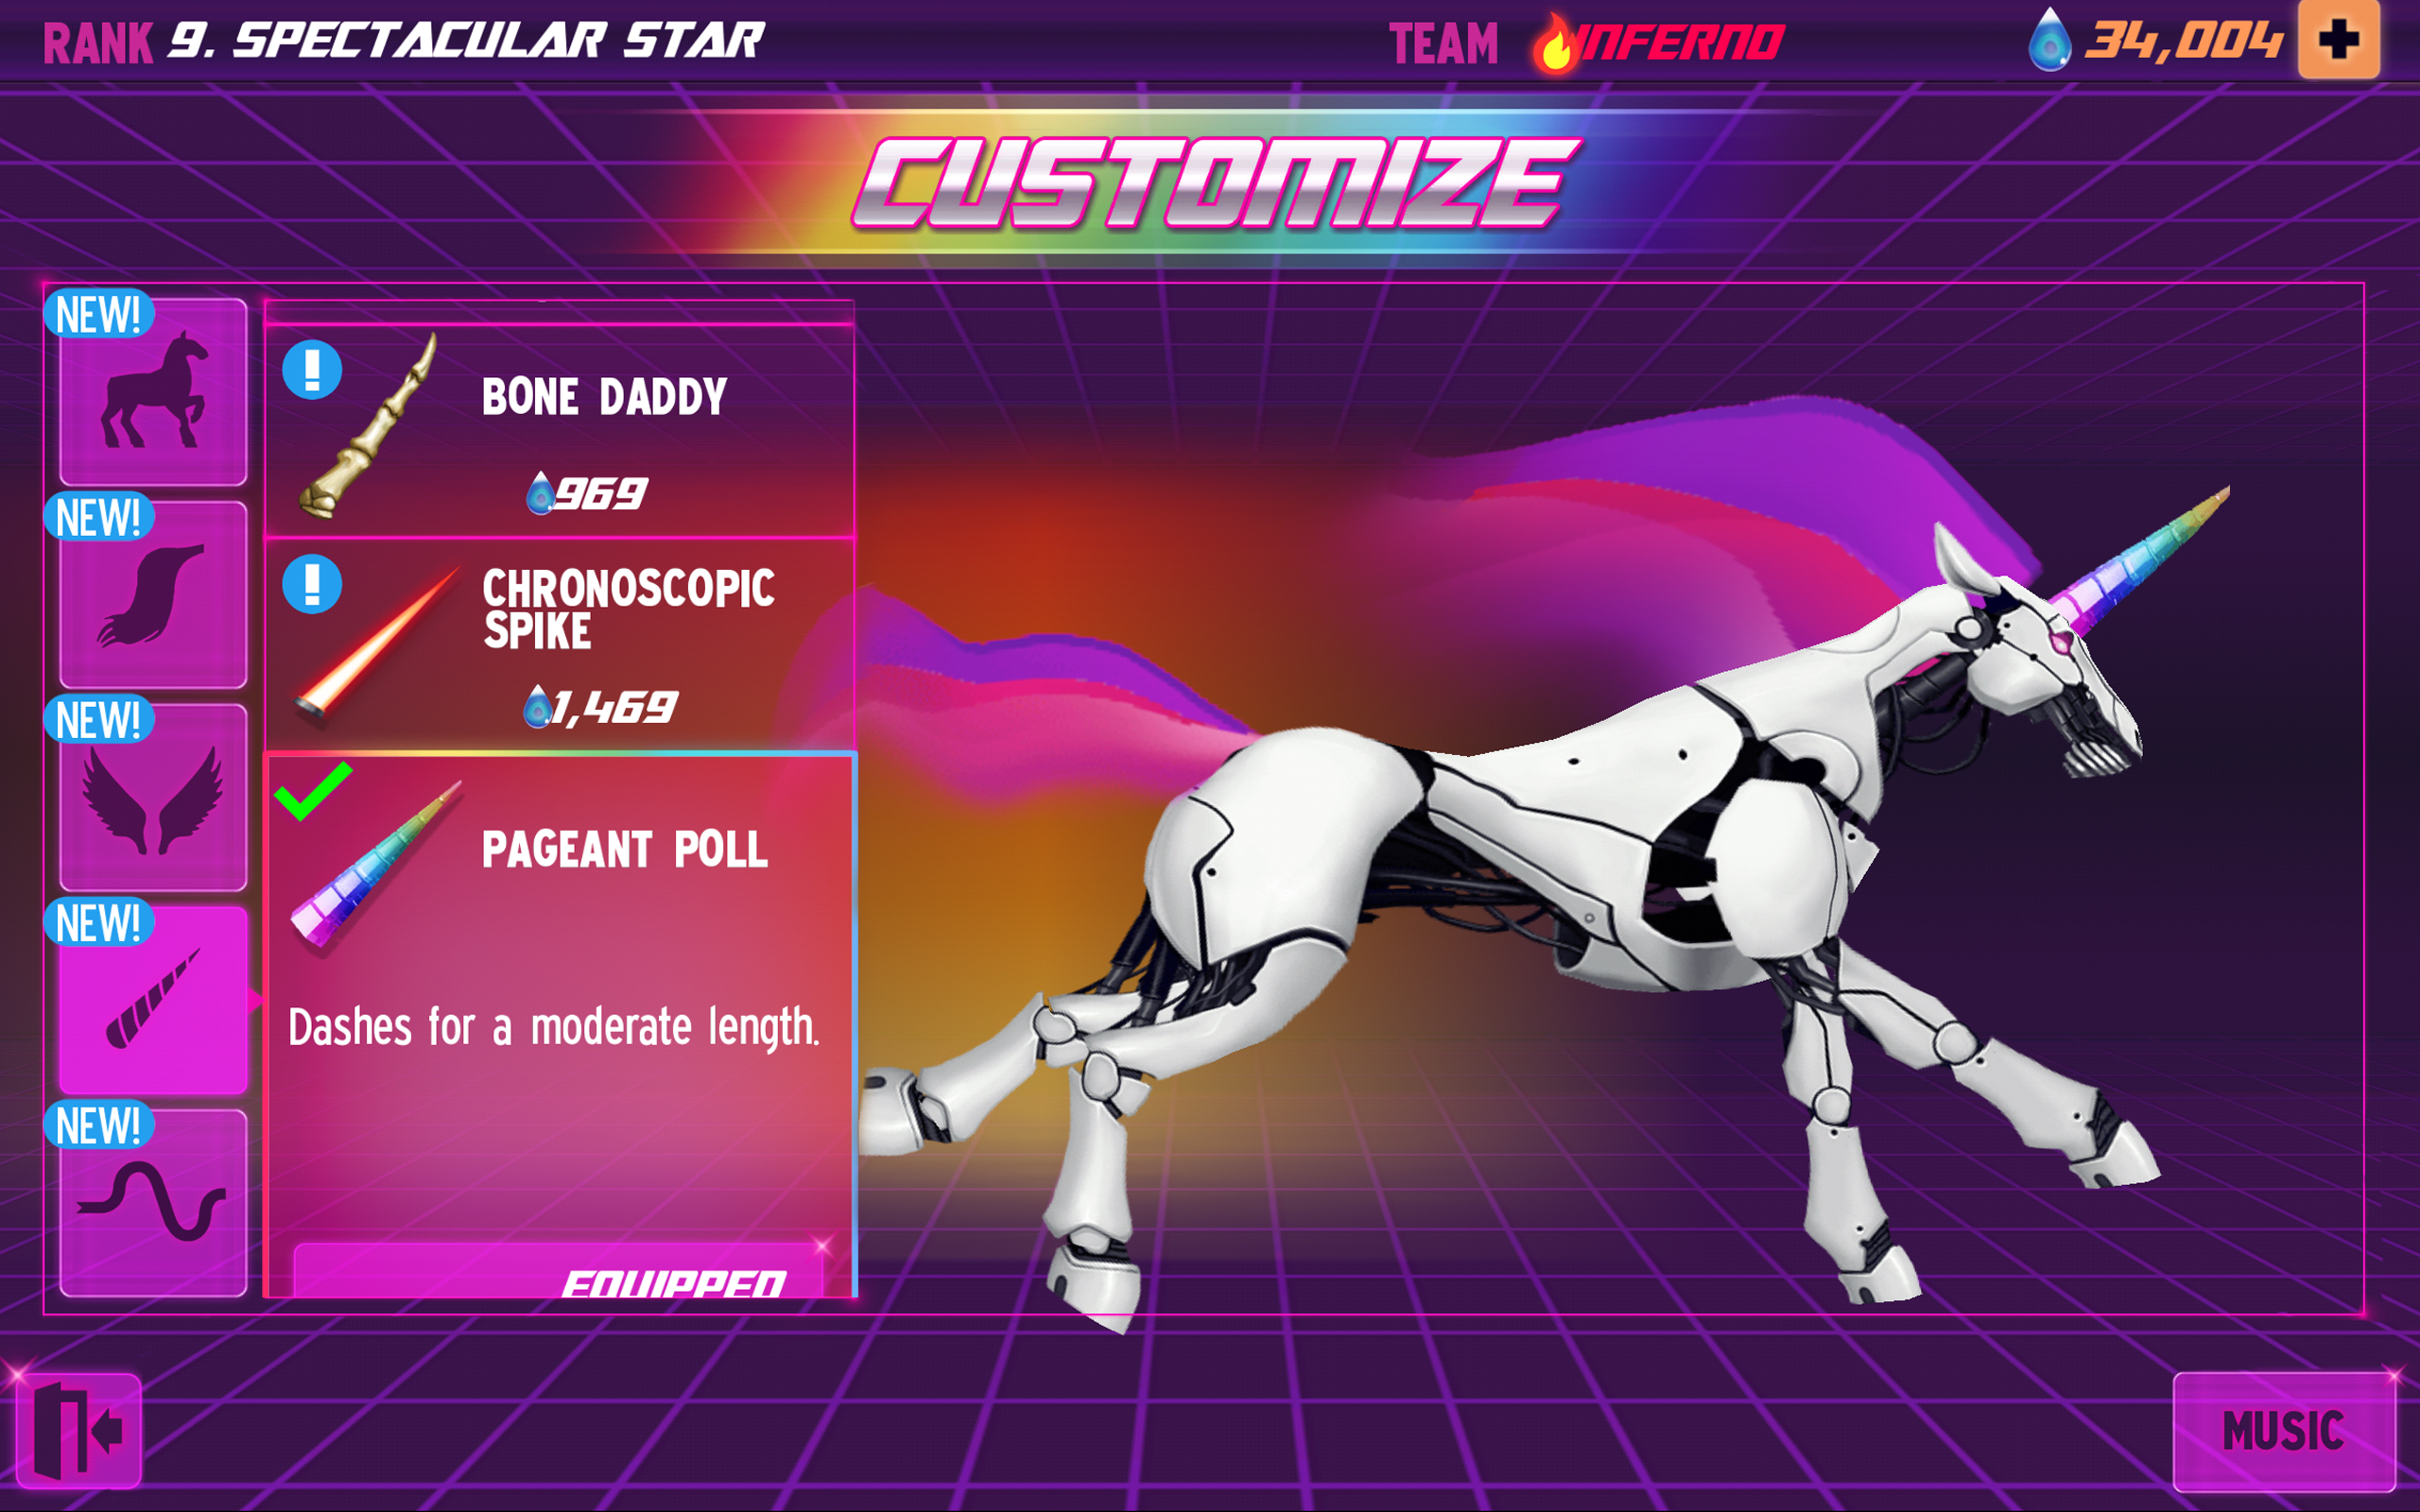 Screenshot of Robot Unicorn Attack 2